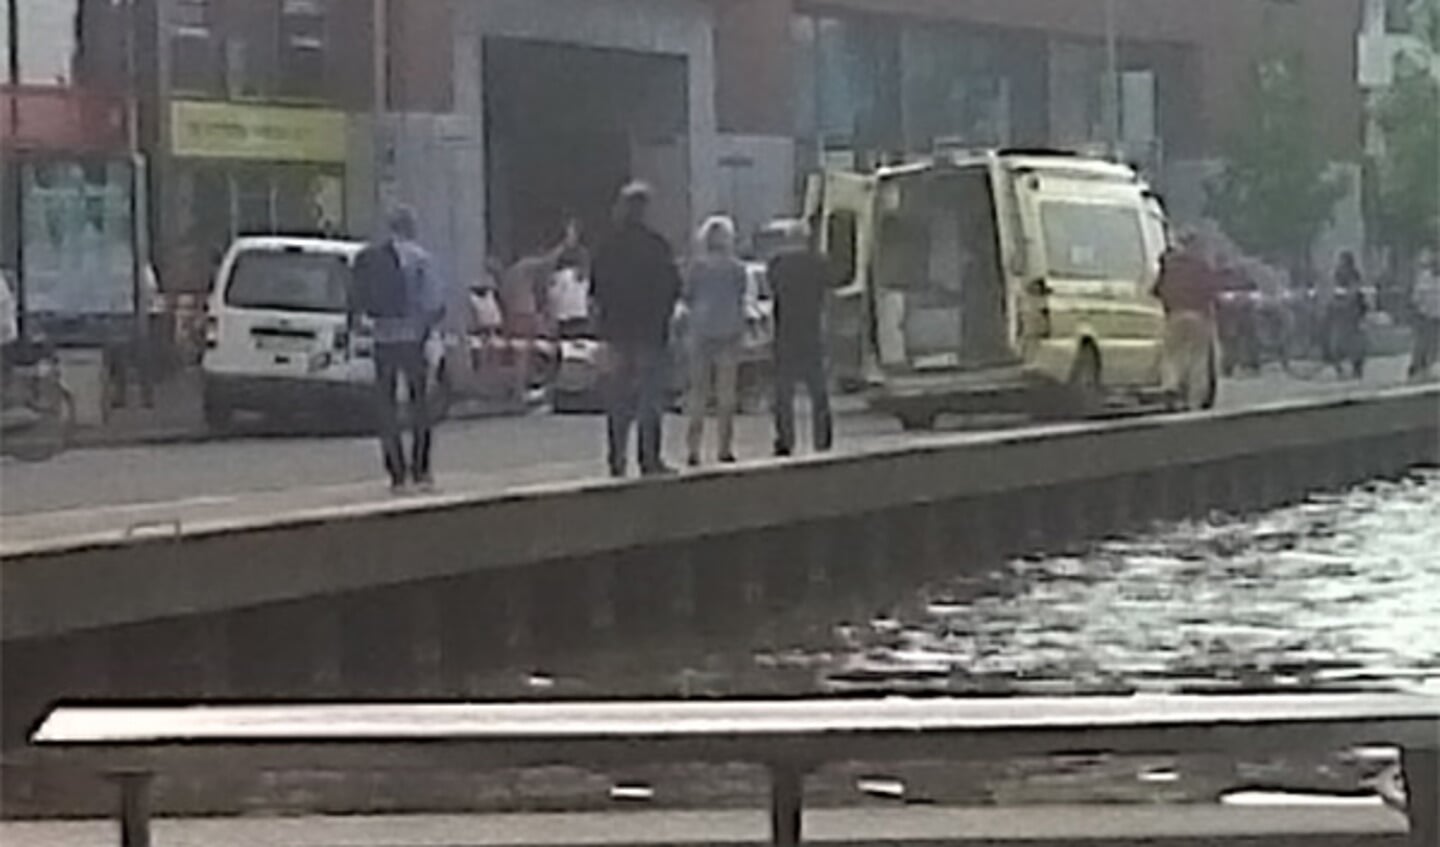 De traumahelikopter landde op de Nieuweweg vanwege het ongeval op de Markendaalseweg. foto @taxiinbreda